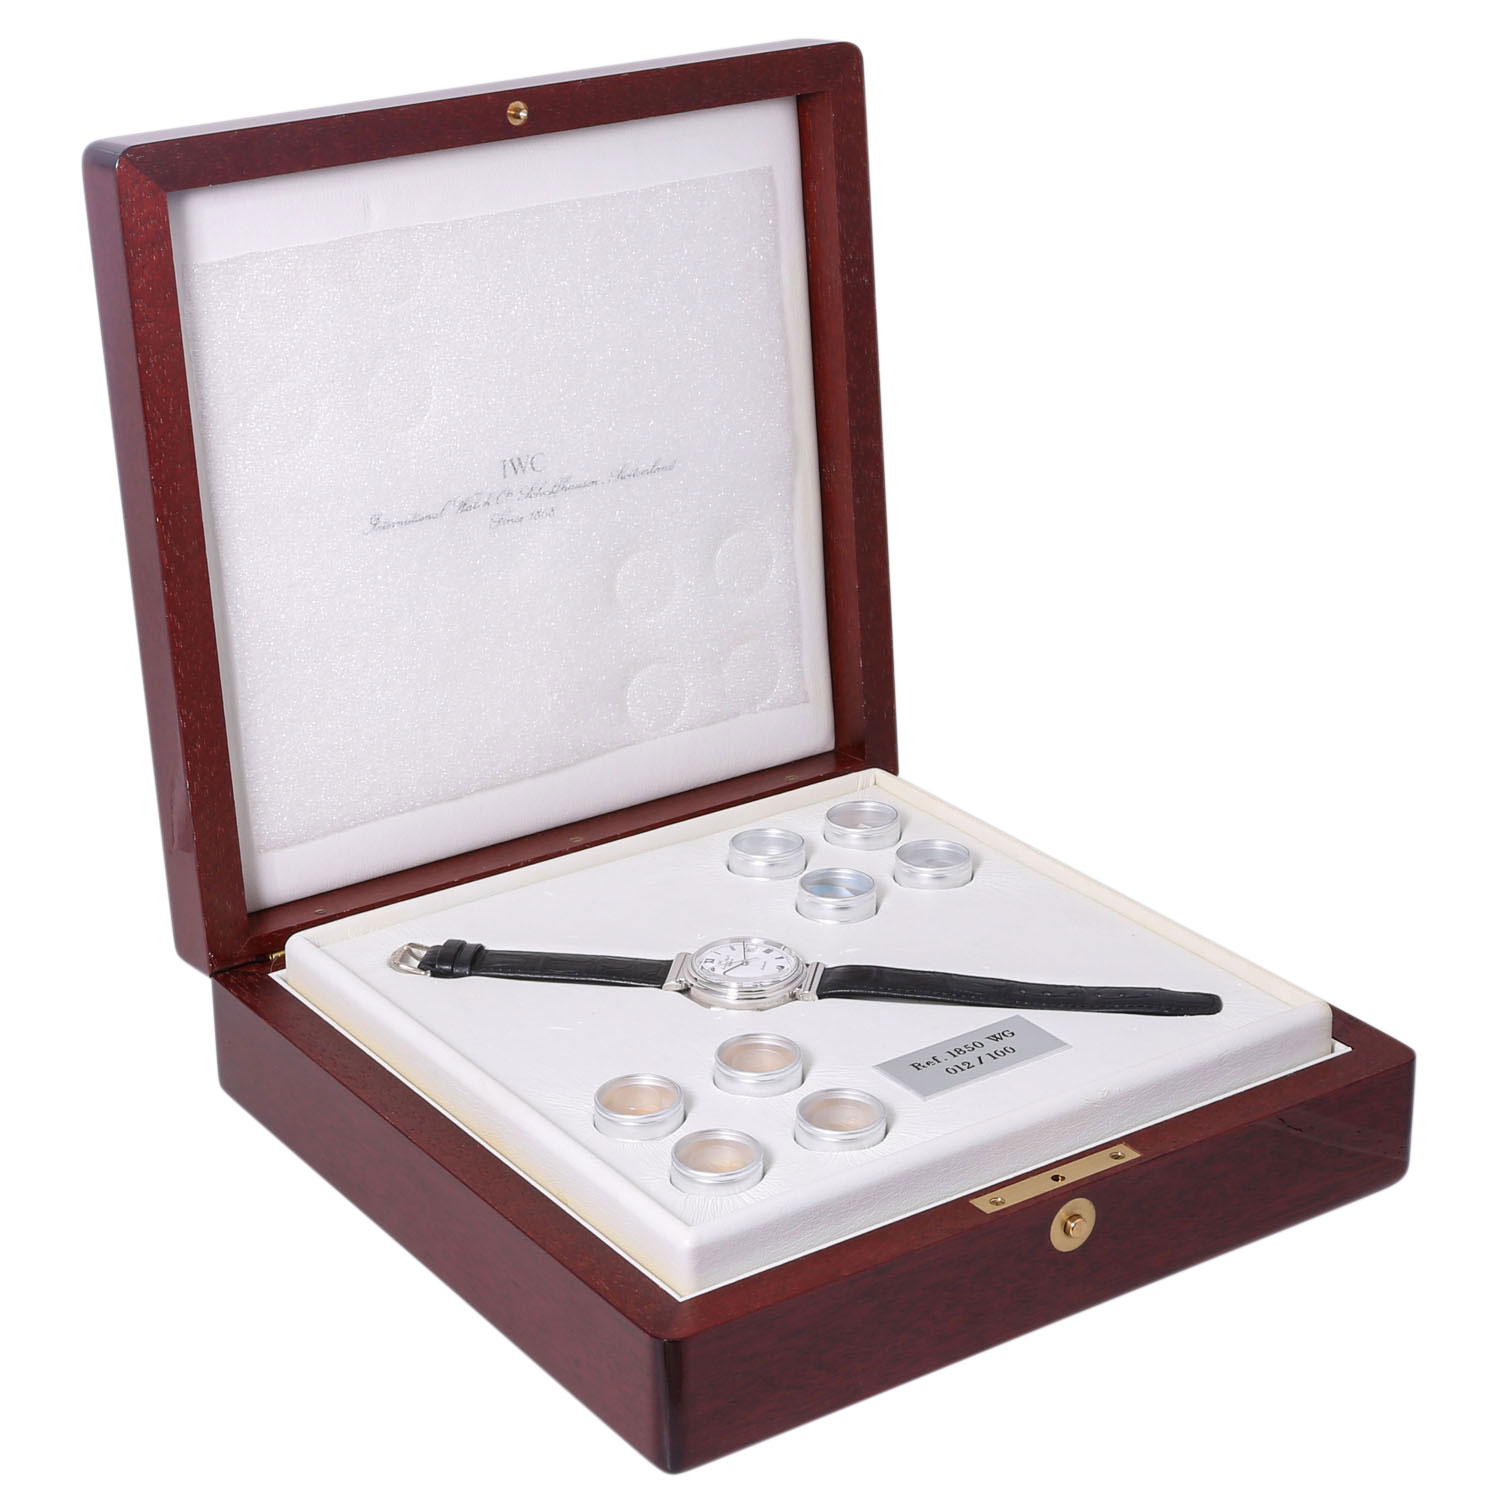 IWC Da Vinci sehr seltene Vintage Herren Armbanduhr, Ref. 1850 WG. NOS. Limitiert 100 St. Zum 120. J - Image 10 of 10